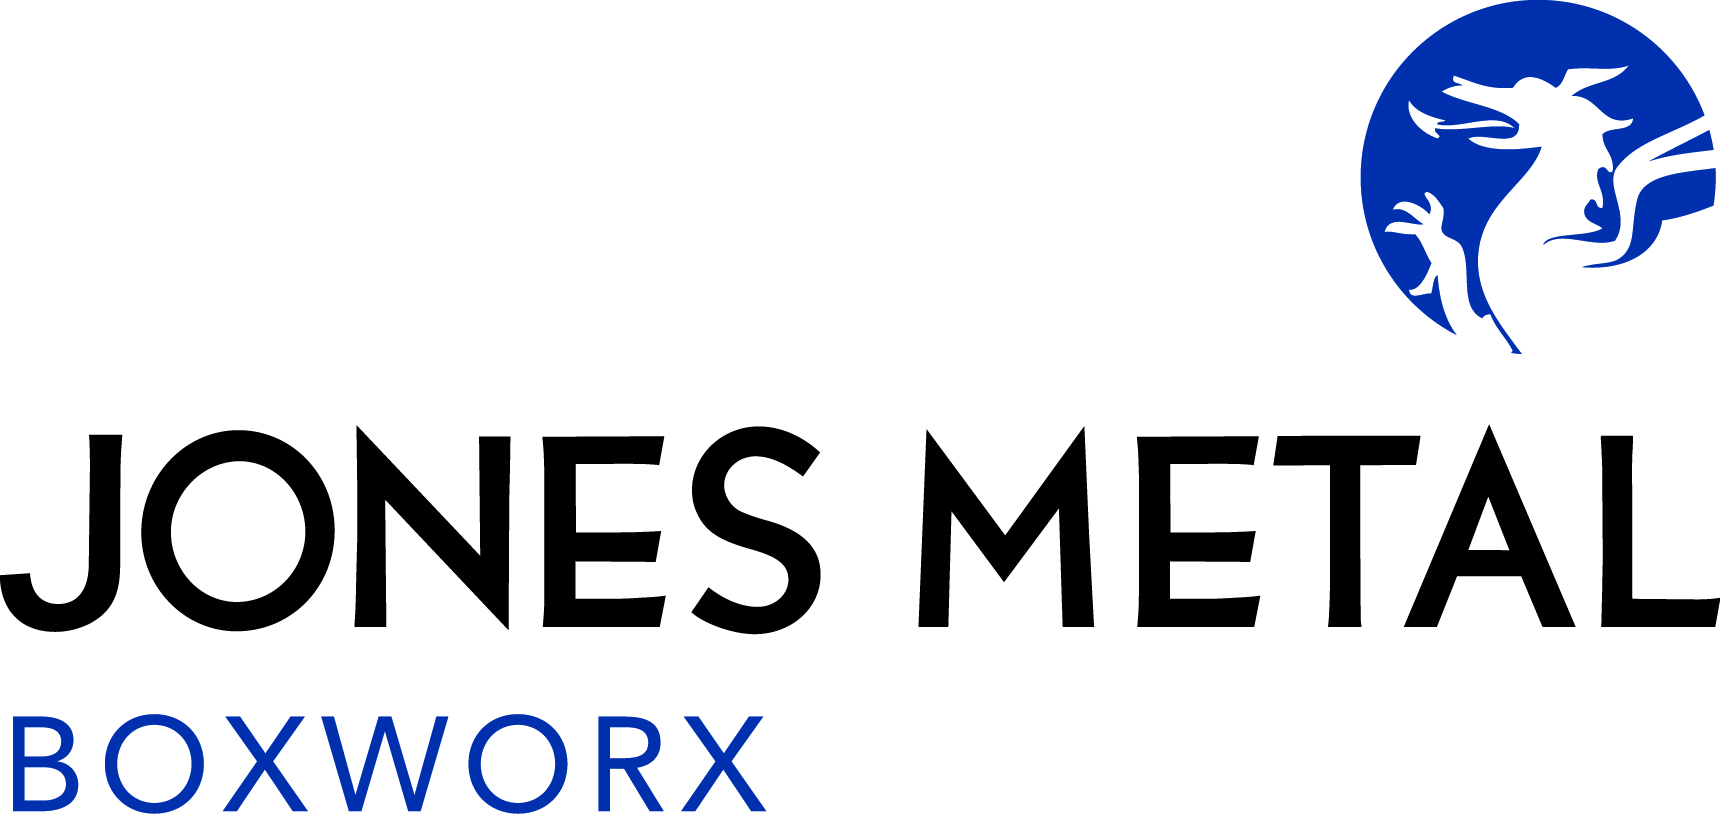 Jones Metal Boxworx